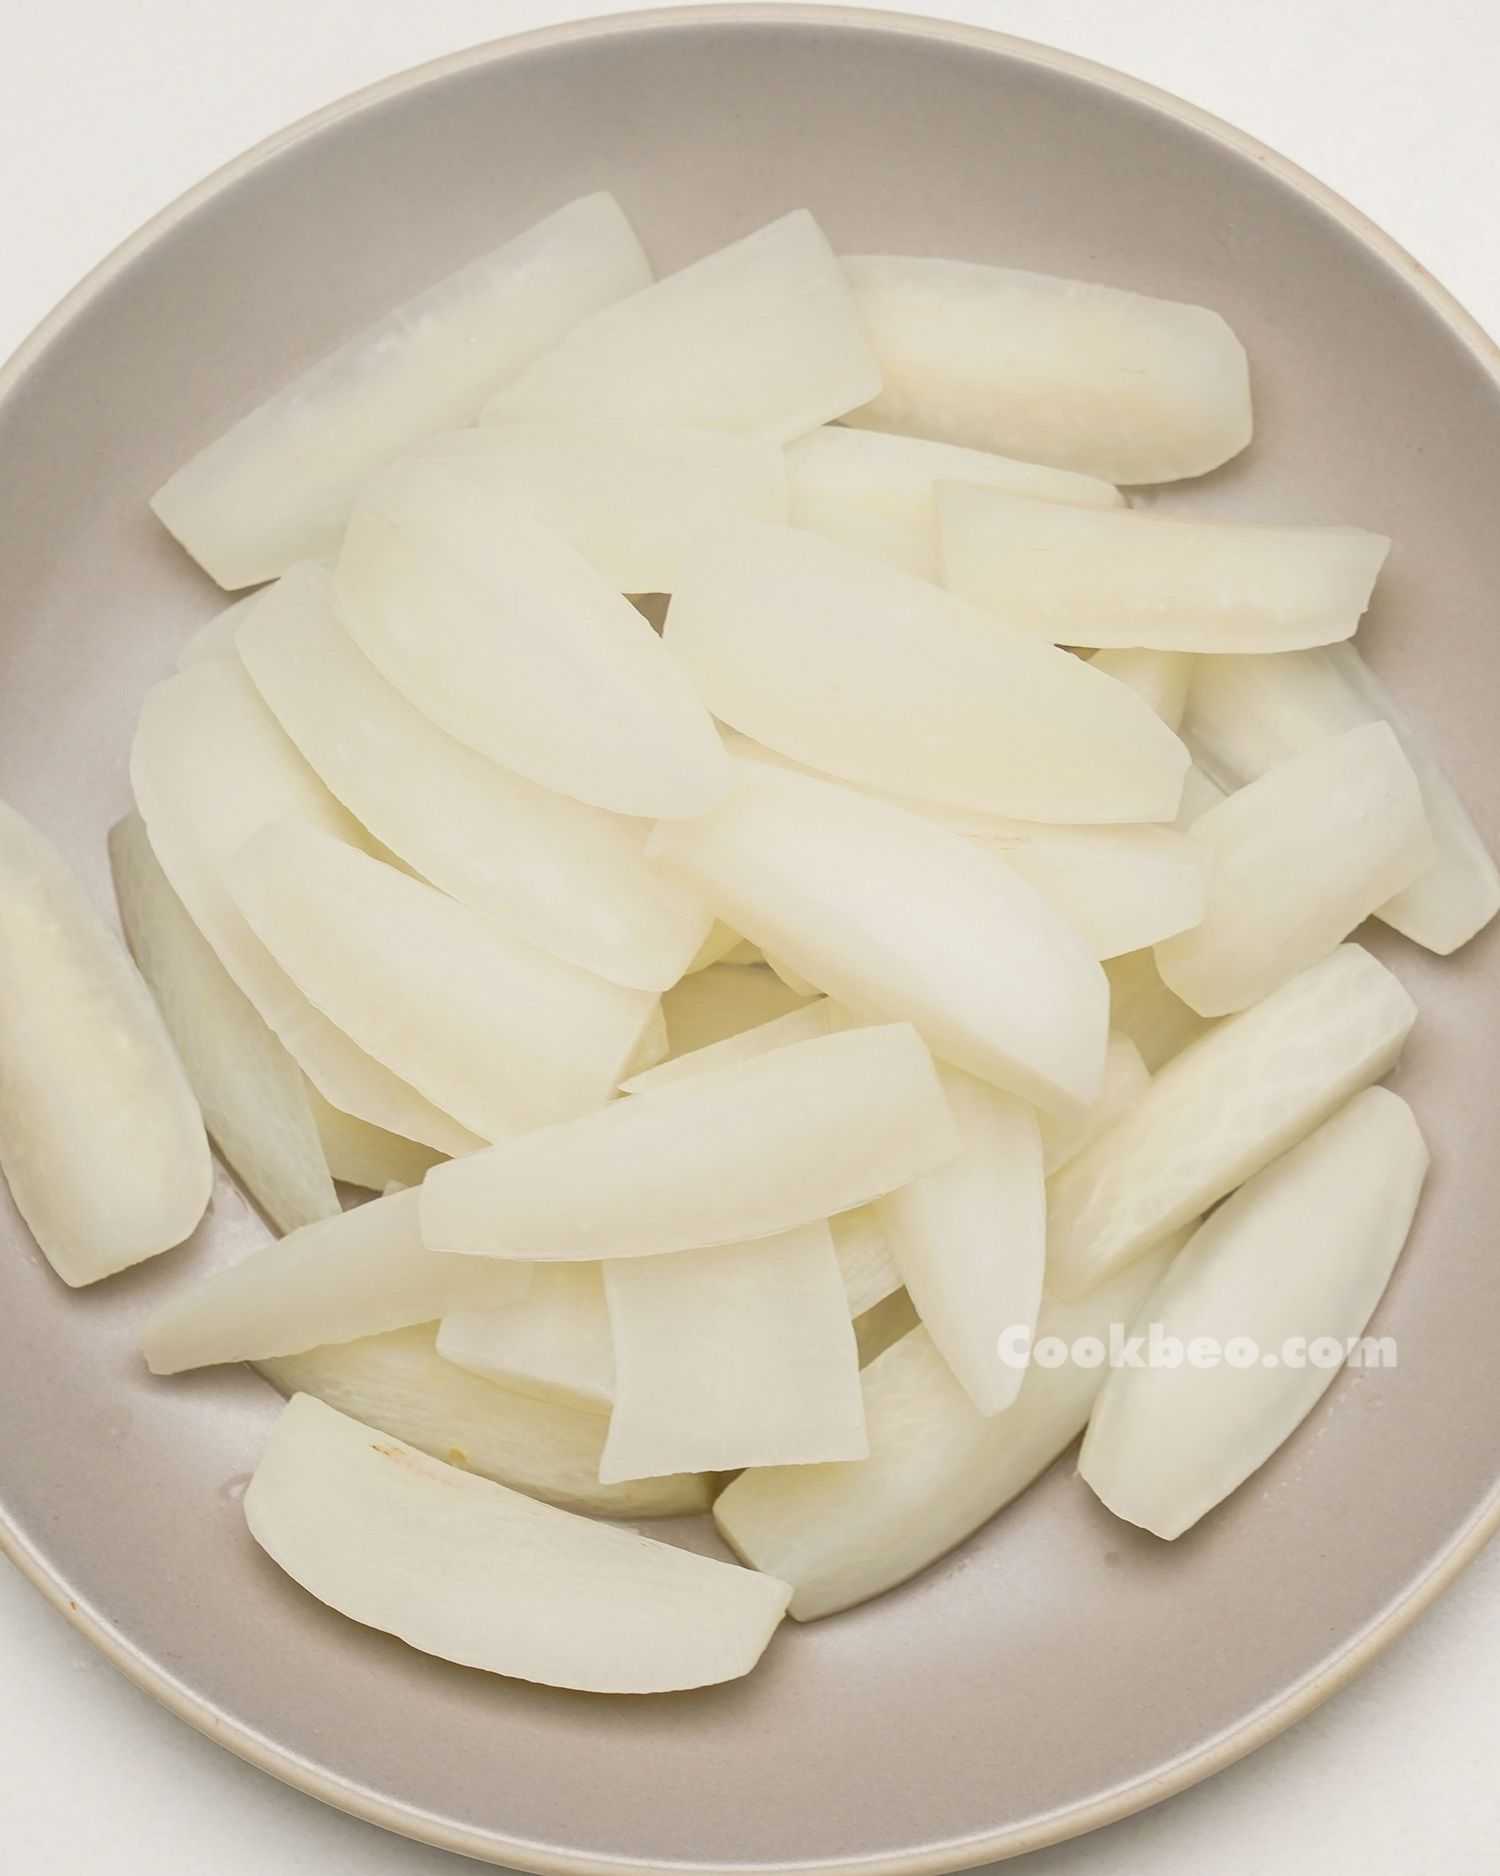 Củ cải White làm cái gi ngon? Tổng hợp ý 22 đồ ăn kể từ củ cải White thú vị dễ dàng làm